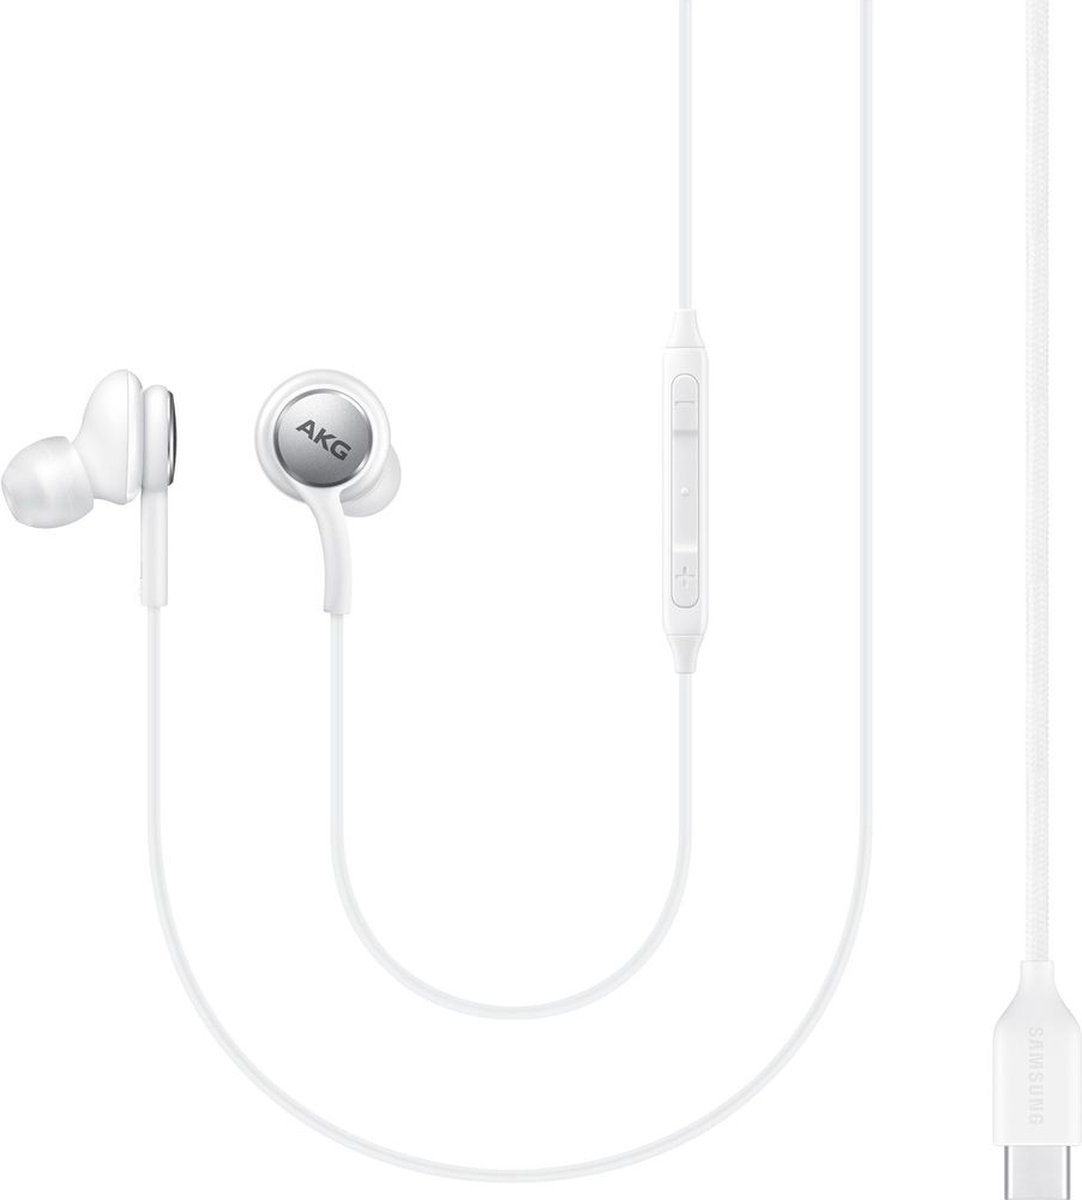 Samsung Industry Packaged AKG Type-C Earphones - Oordopjes USB-C aansluiting - Wit